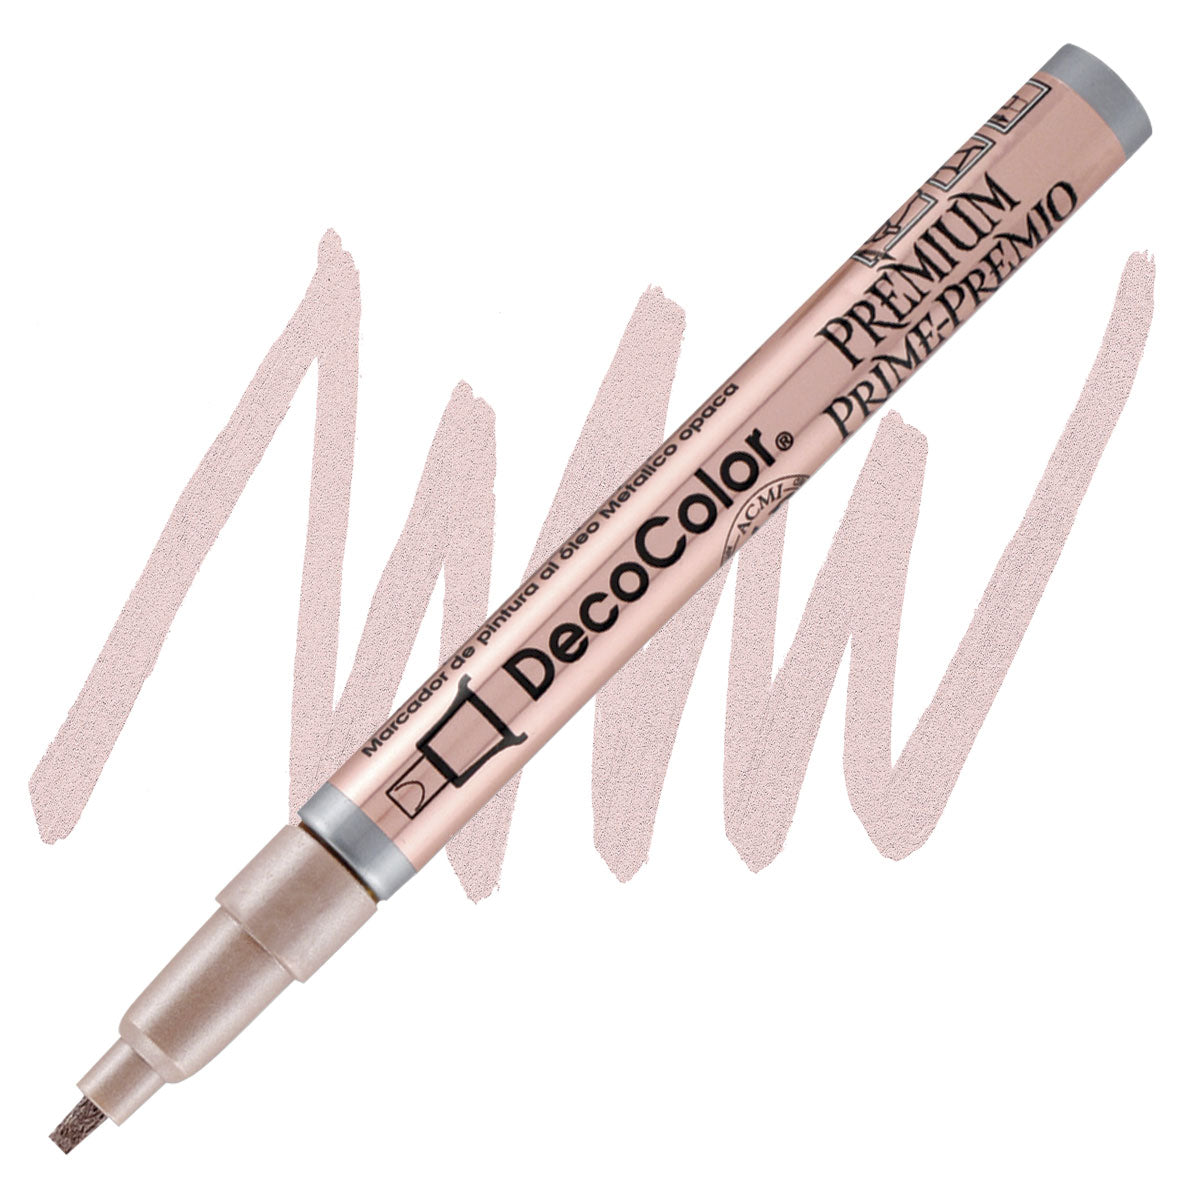 Pennarello a vernice Decocolor Premium, punta piatta/foglia da 2 mm